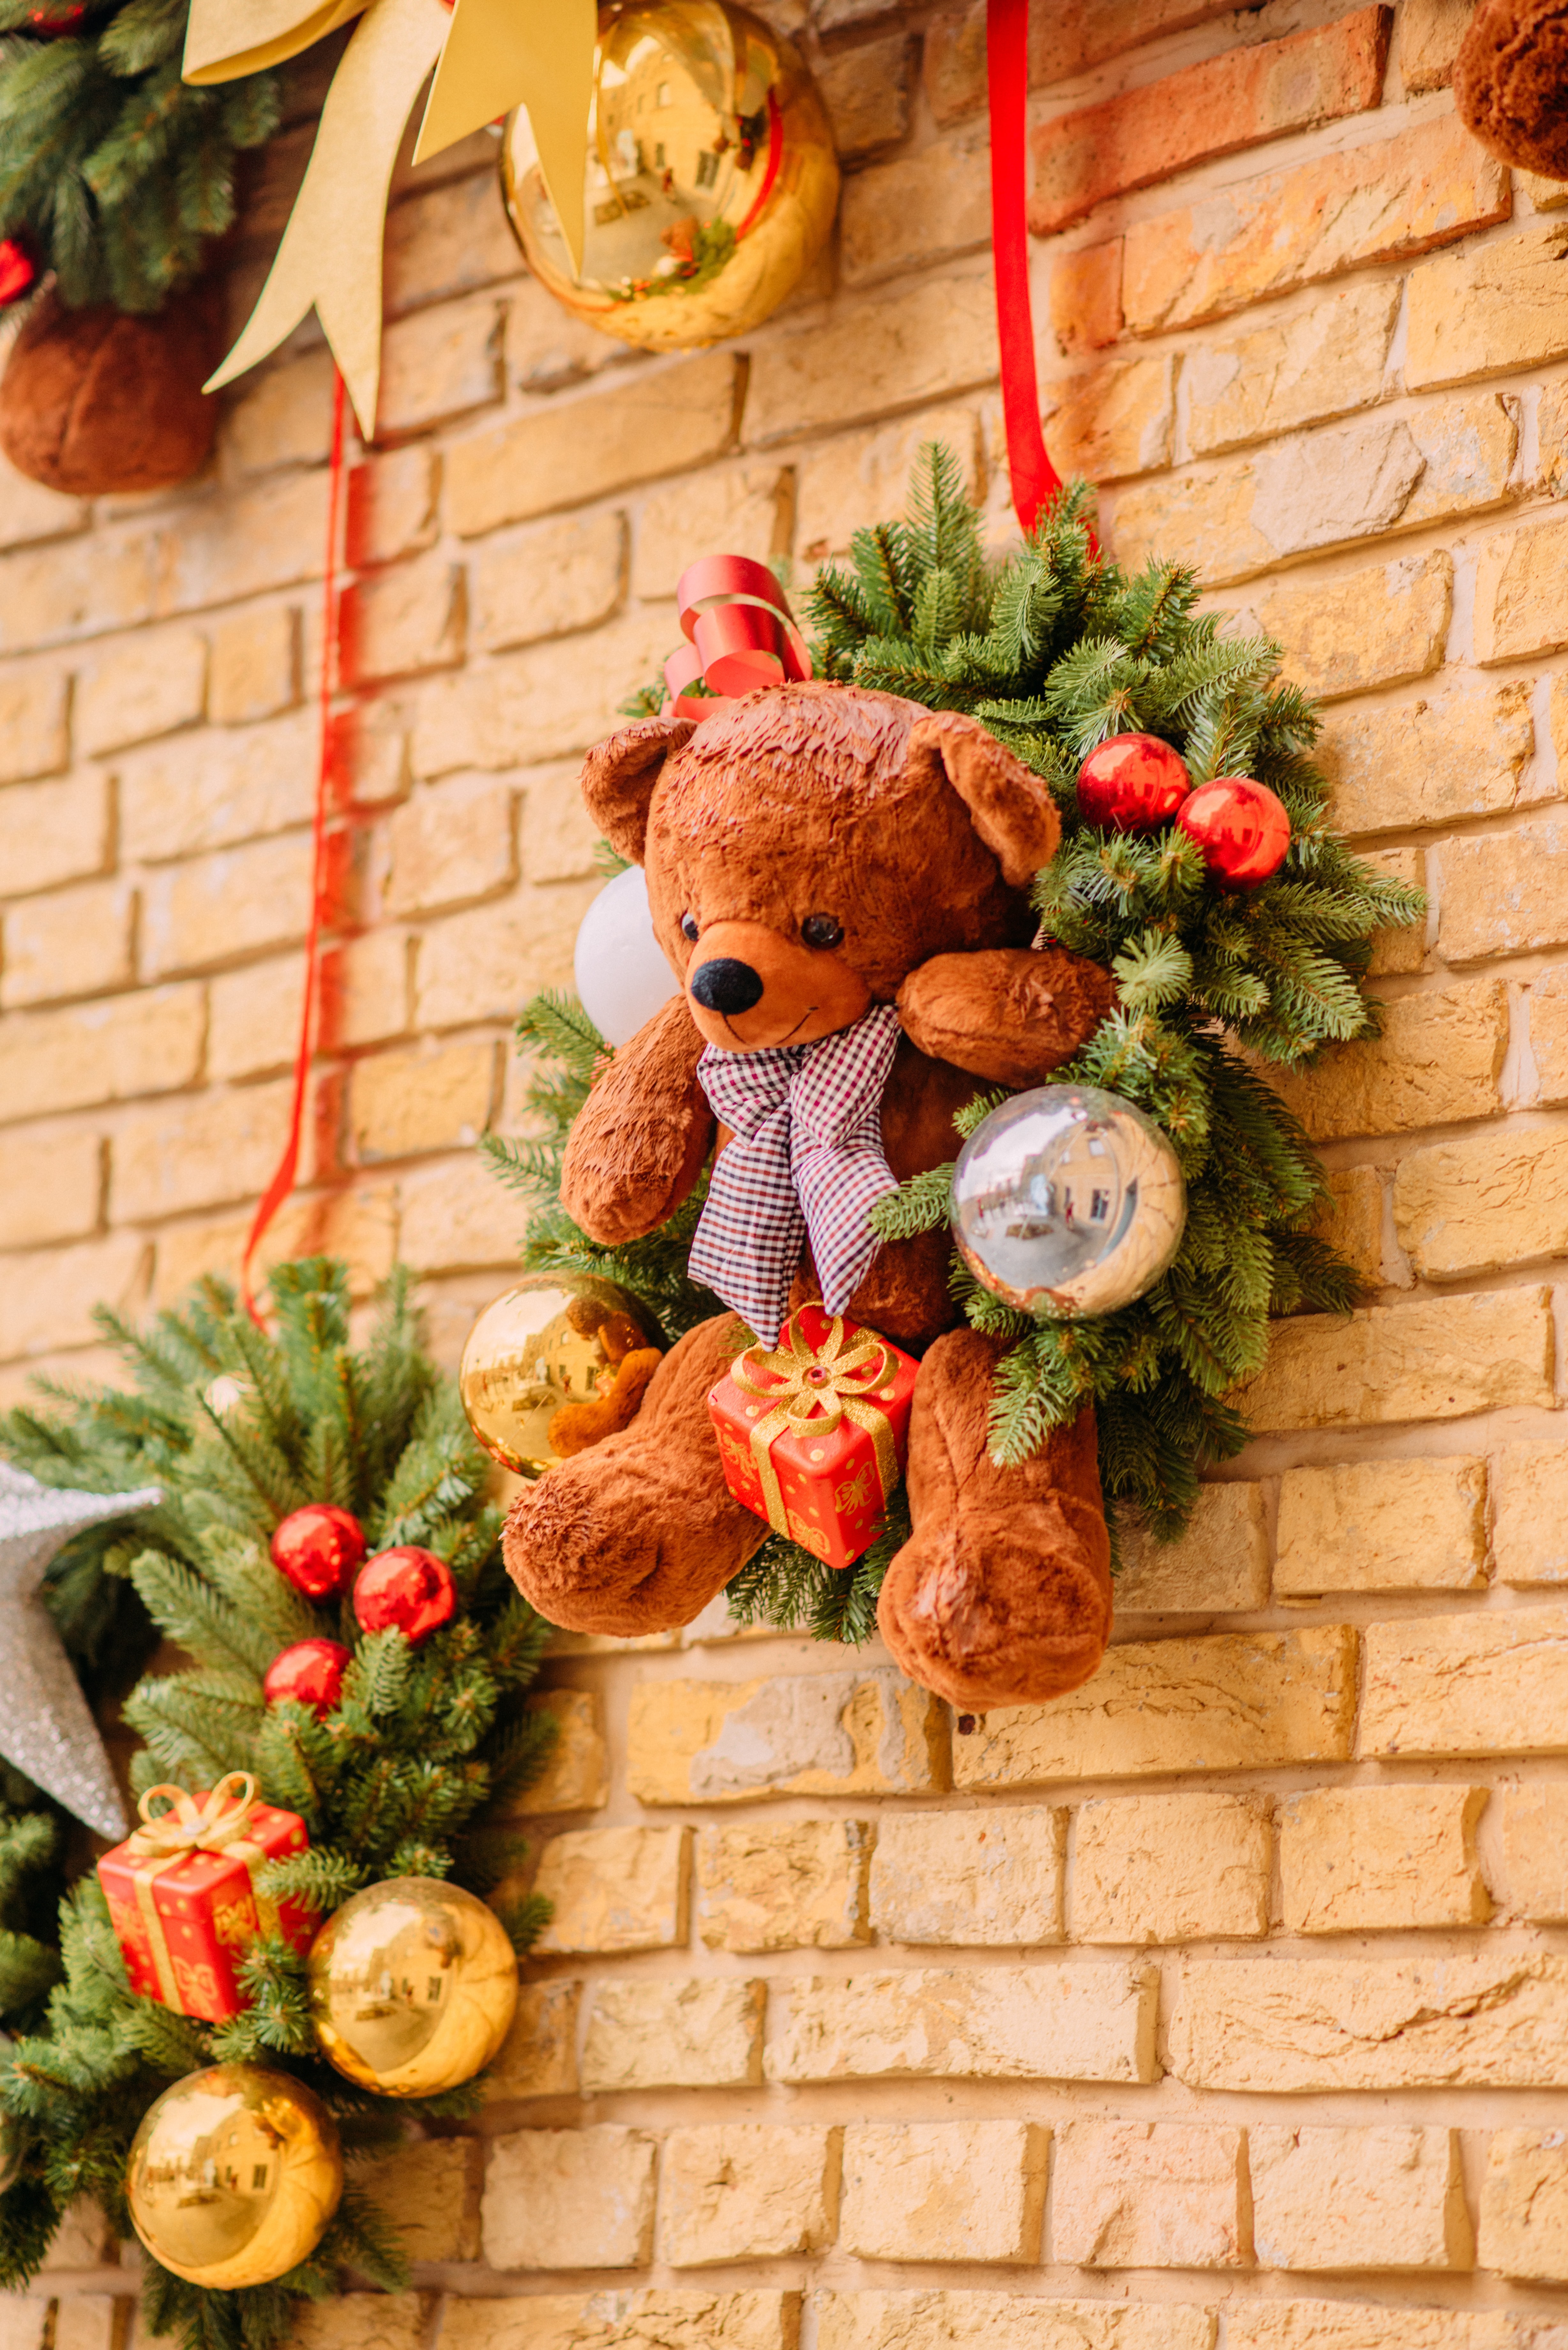 Free HD christmas, teddy bear, holidays, new year, decorations, toy, wreath